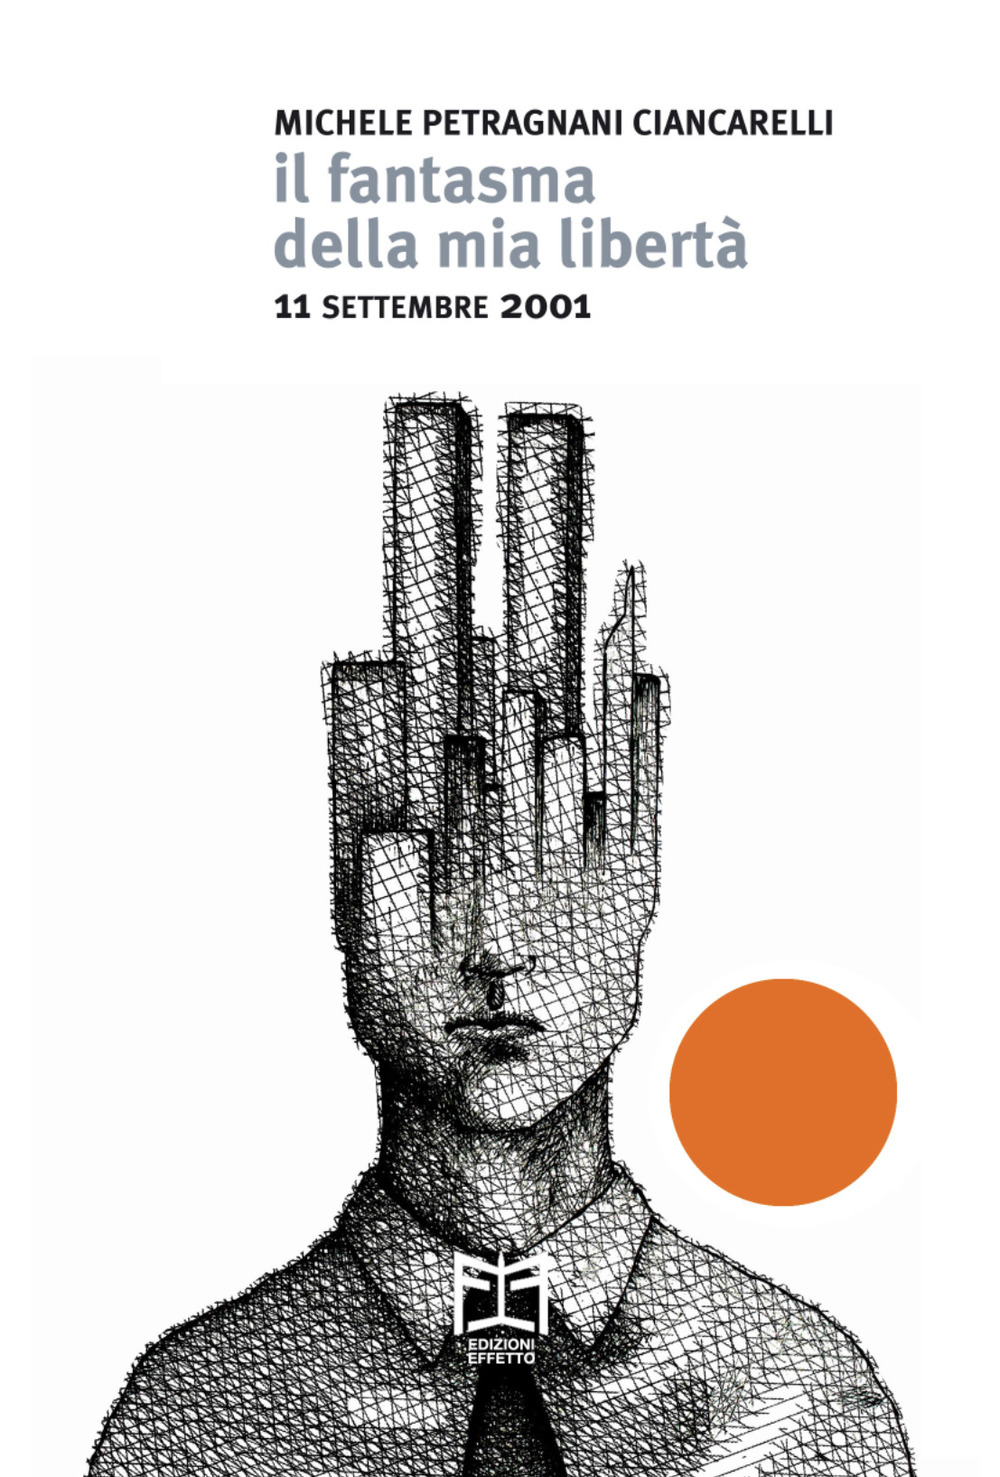 Libri Petragnani Ciancarelli Michele - Il Fantasma Della Mia Liberta. 11 Settembre 2001 NUOVO SIGILLATO, EDIZIONE DEL 11/09/2021 SUBITO DISPONIBILE